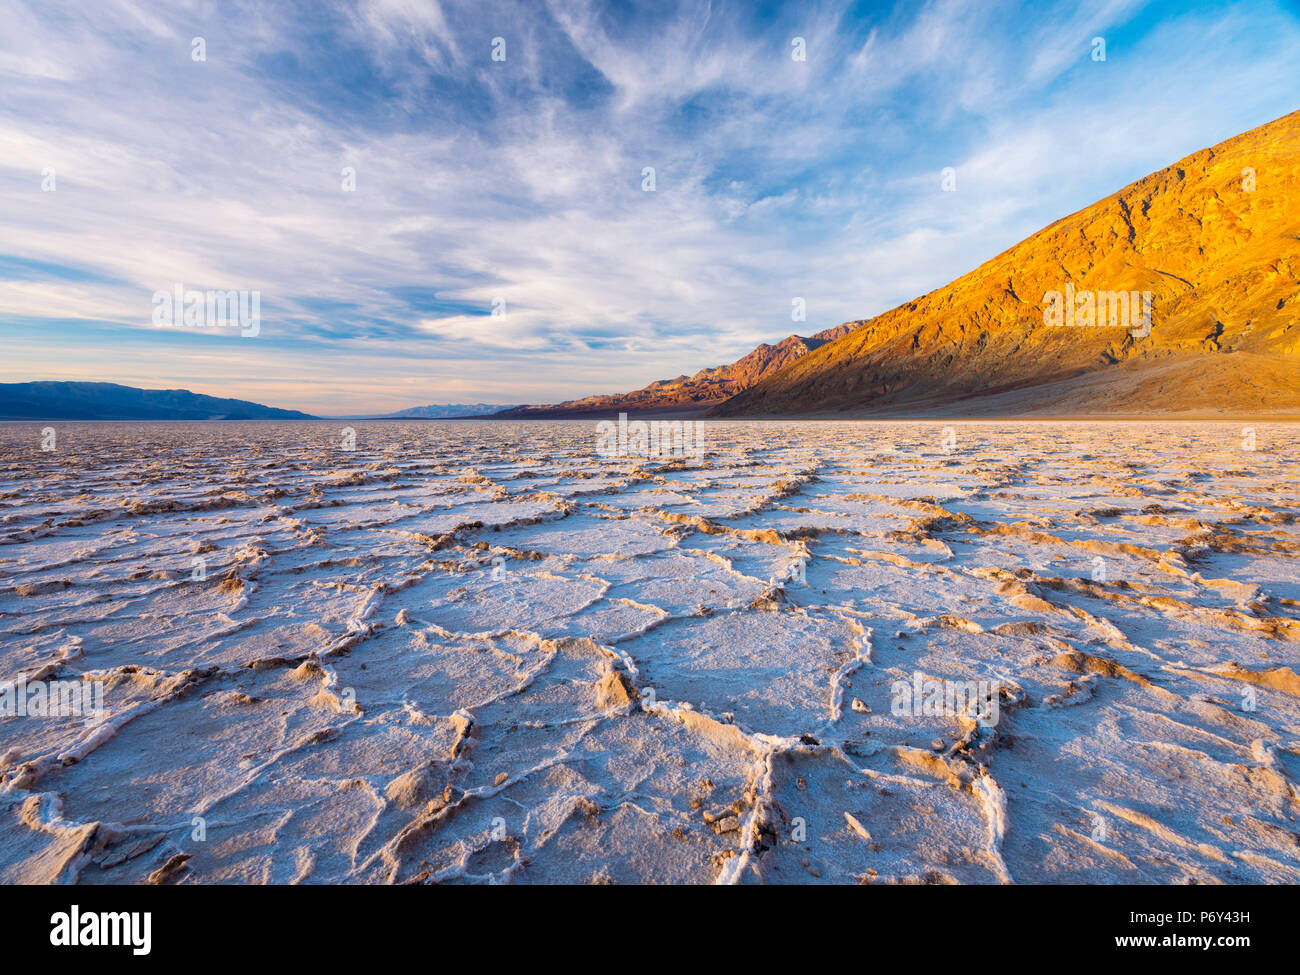 USA, Kalifornien, Death Valley National Park, Badwater Basin, niedrigster Punkt in Nordamerika, Salzkruste in sechseckige Druck Rippen gebrochen Stockfoto